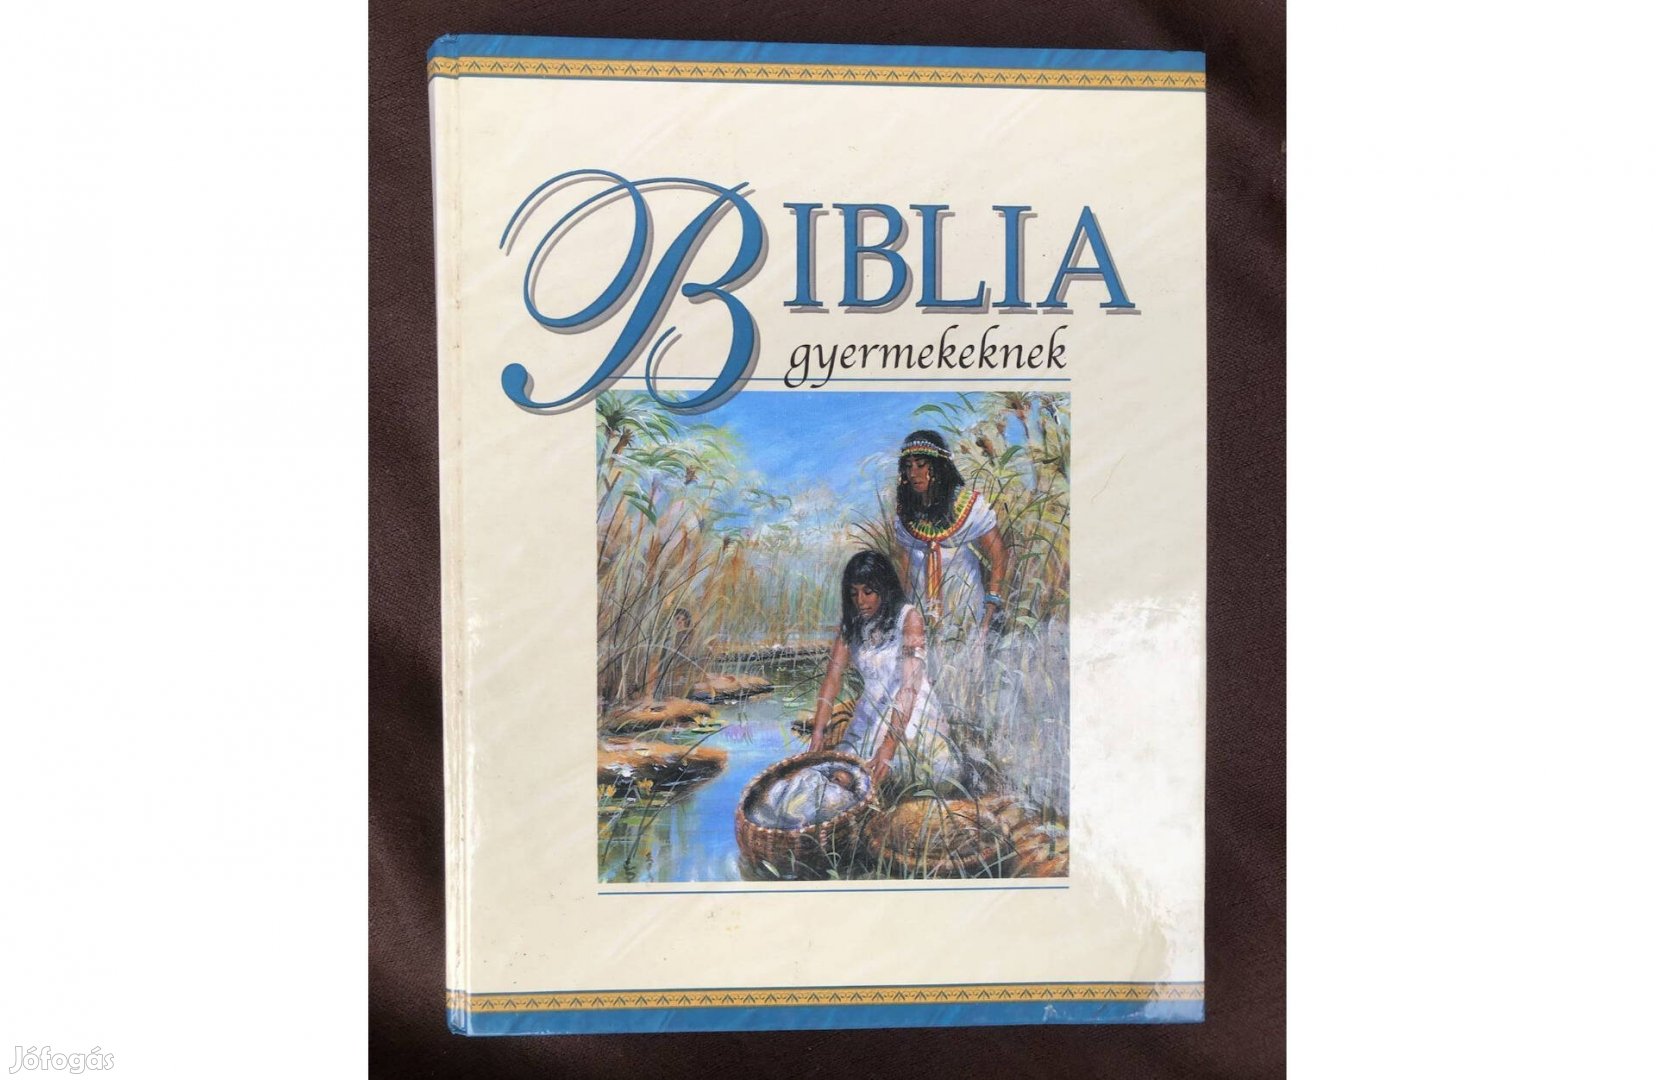 Biblia gyerekeknek könyv 2000 Ft :Lenti